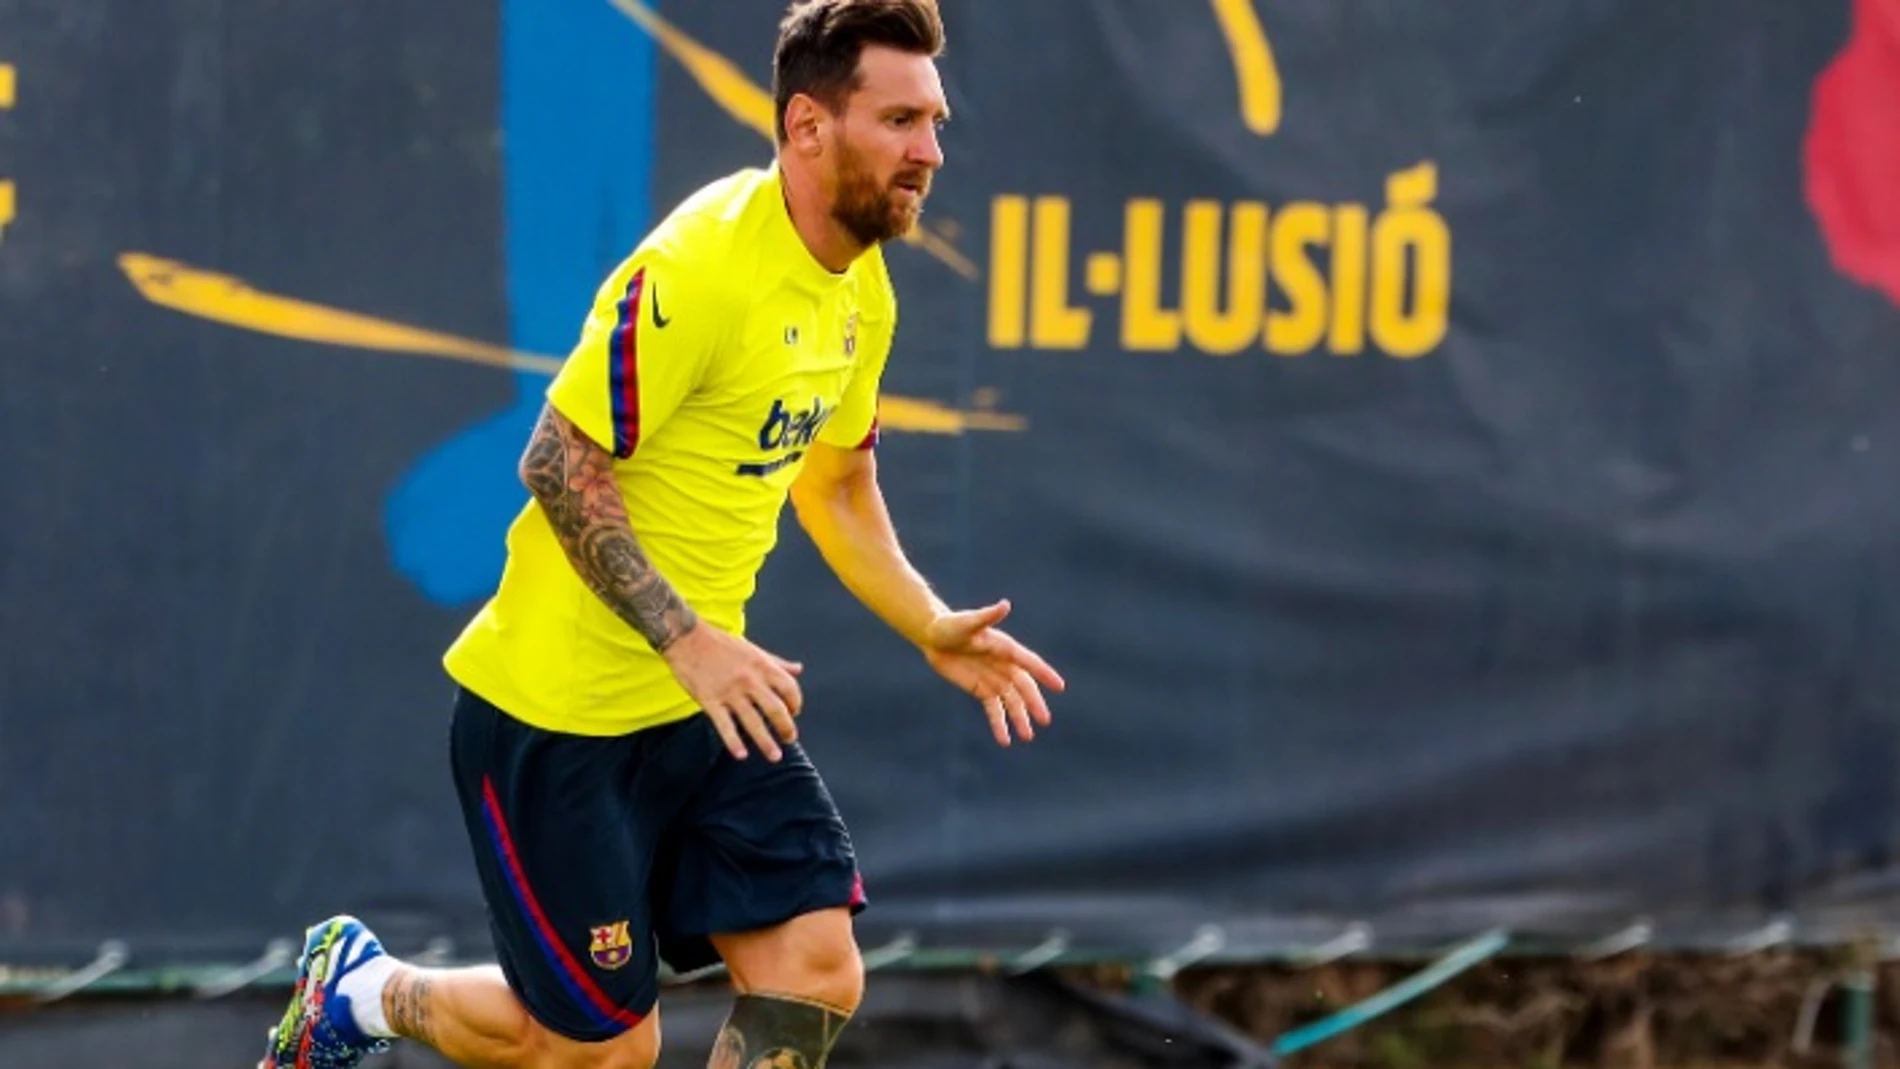 Conquista bañera Picotear La historia detrás de las nuevas botas de Leo Messi que causan sensación en  las redes